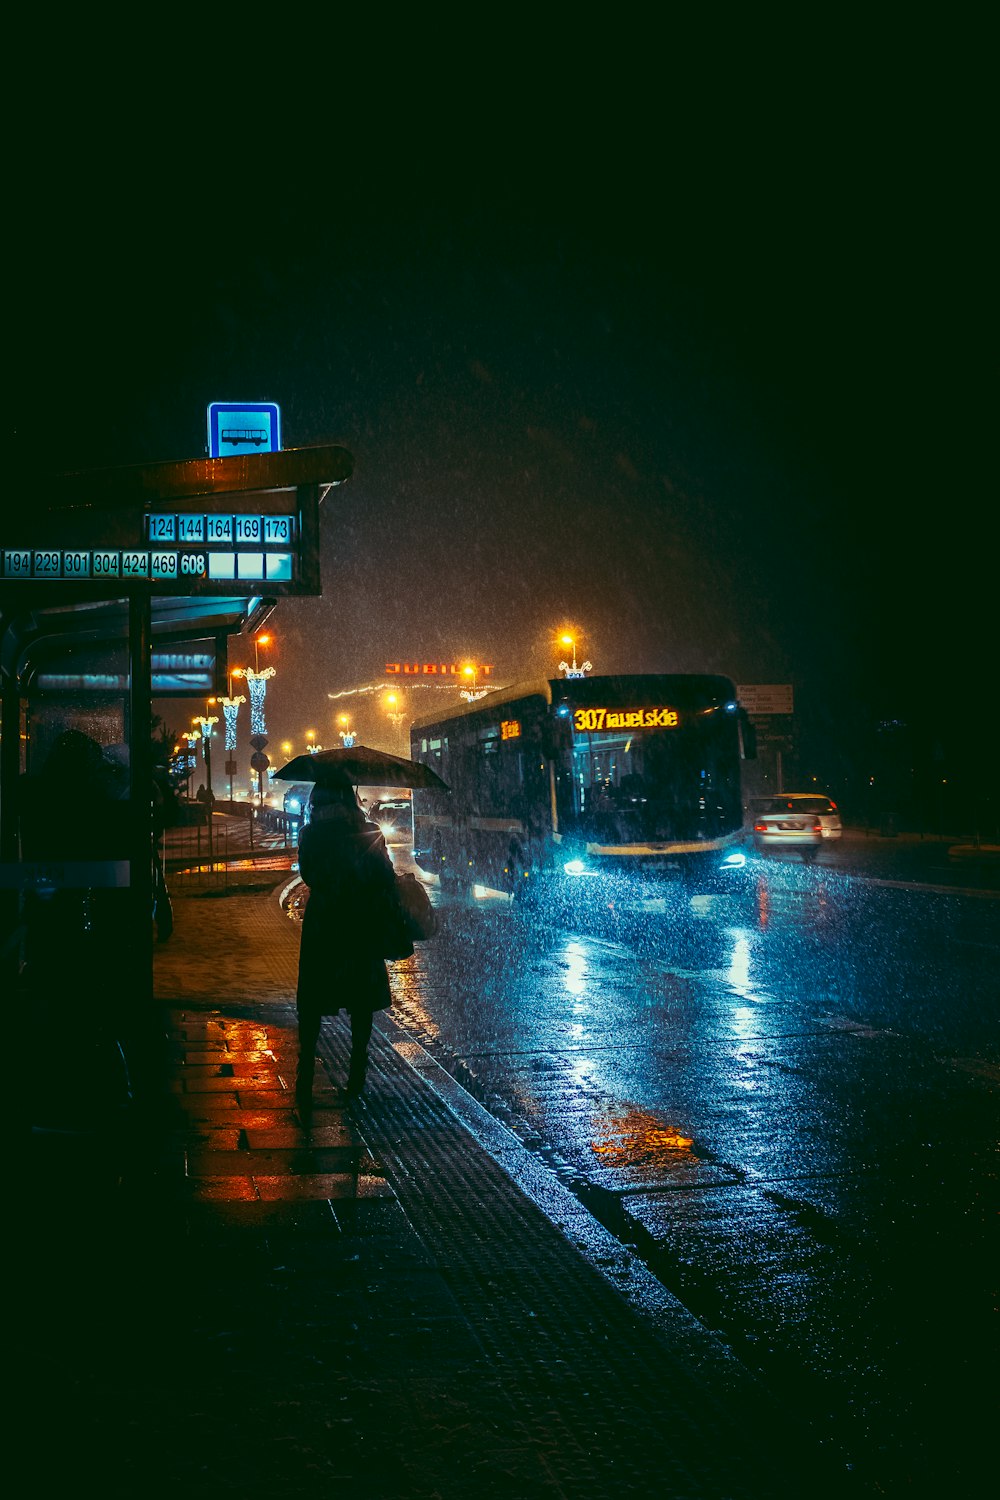 une personne tenant un parapluie par une nuit pluvieuse